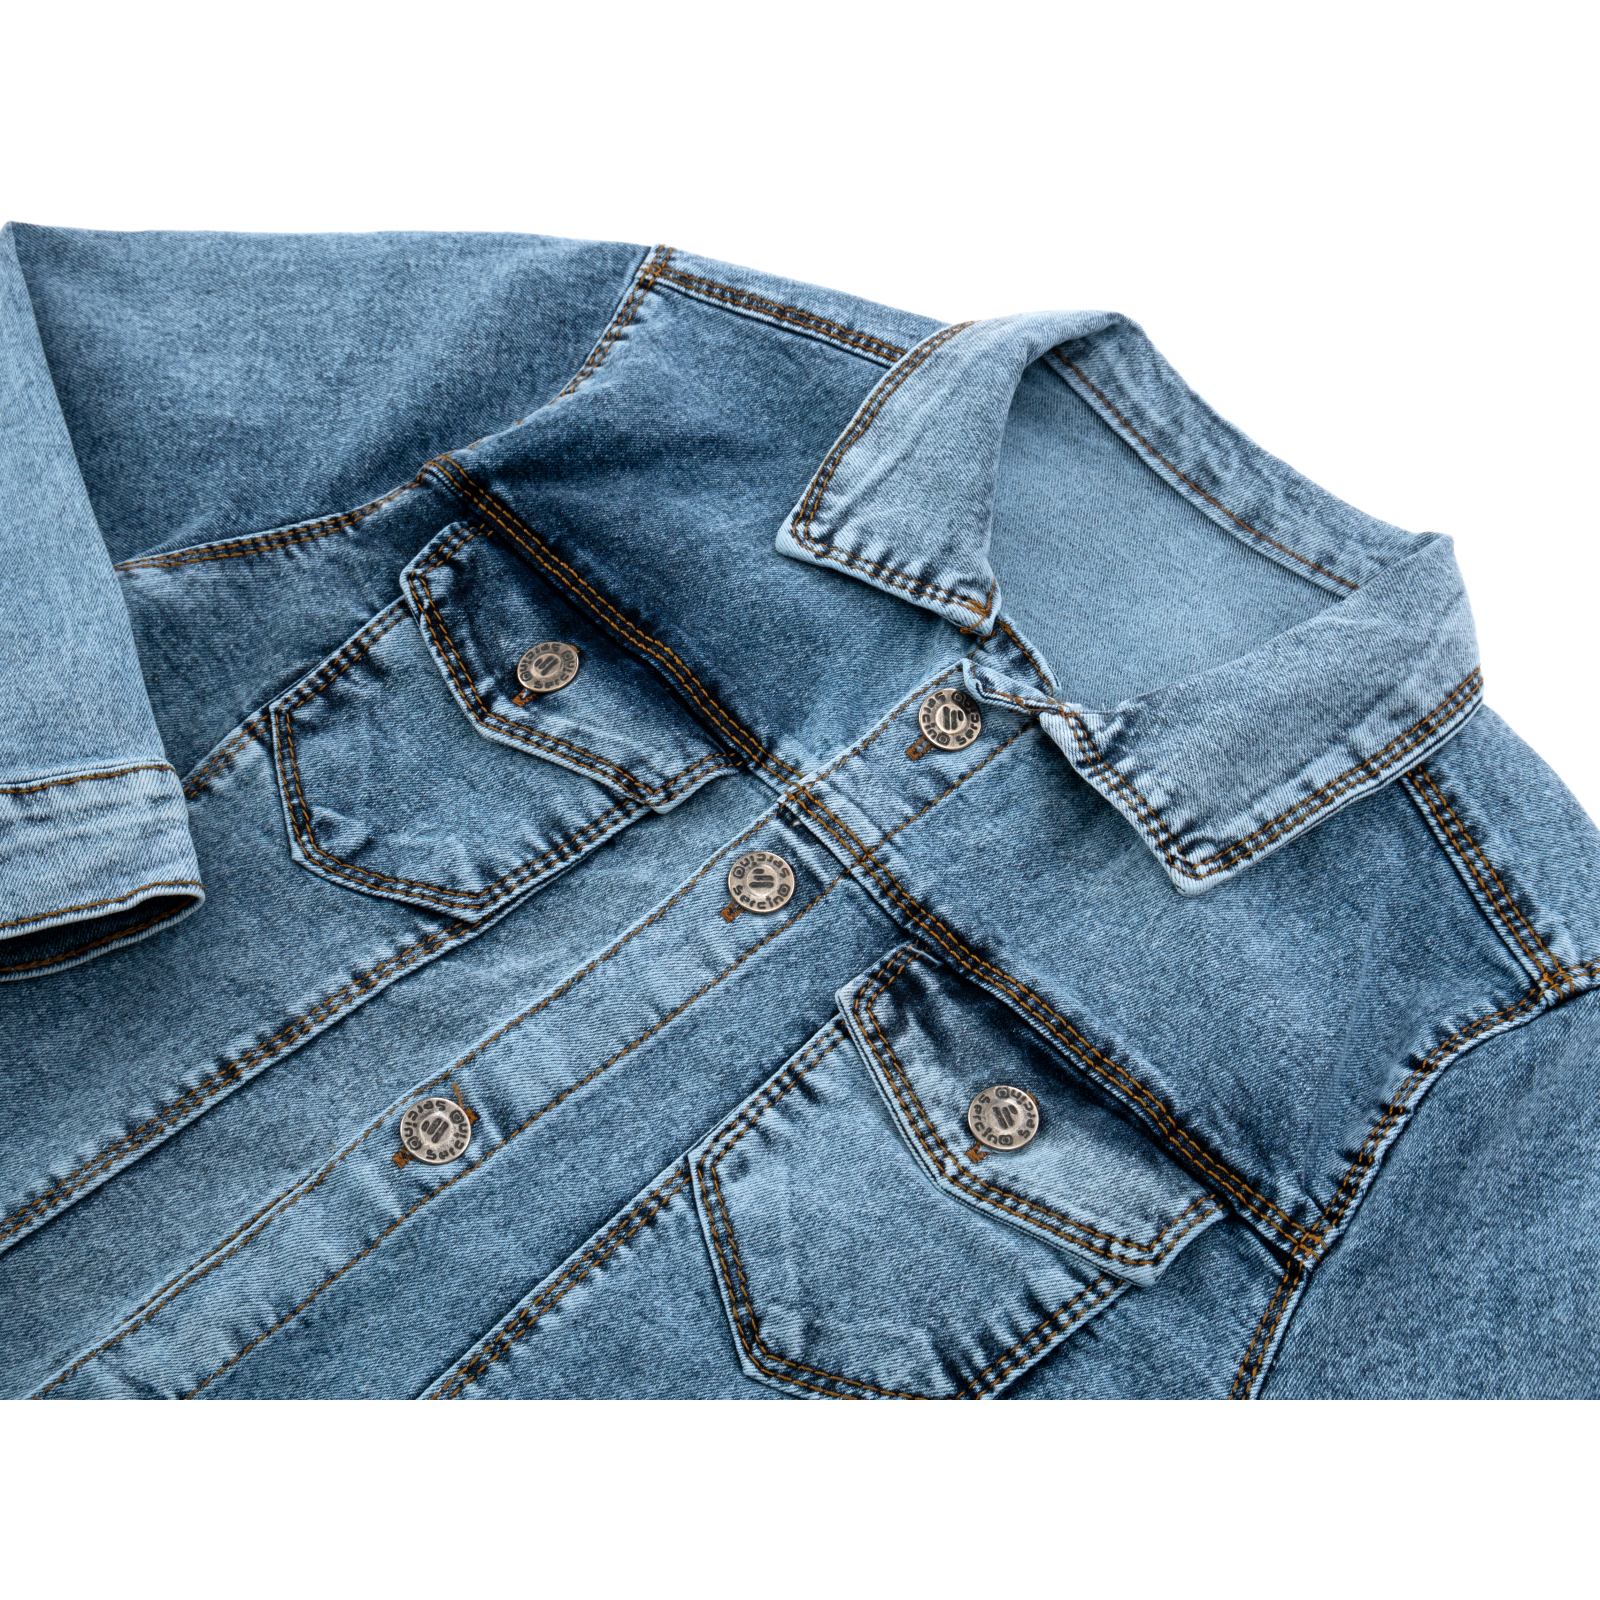 Пиджак Sercino джинсовый (99723-146B-blue) изображение 3